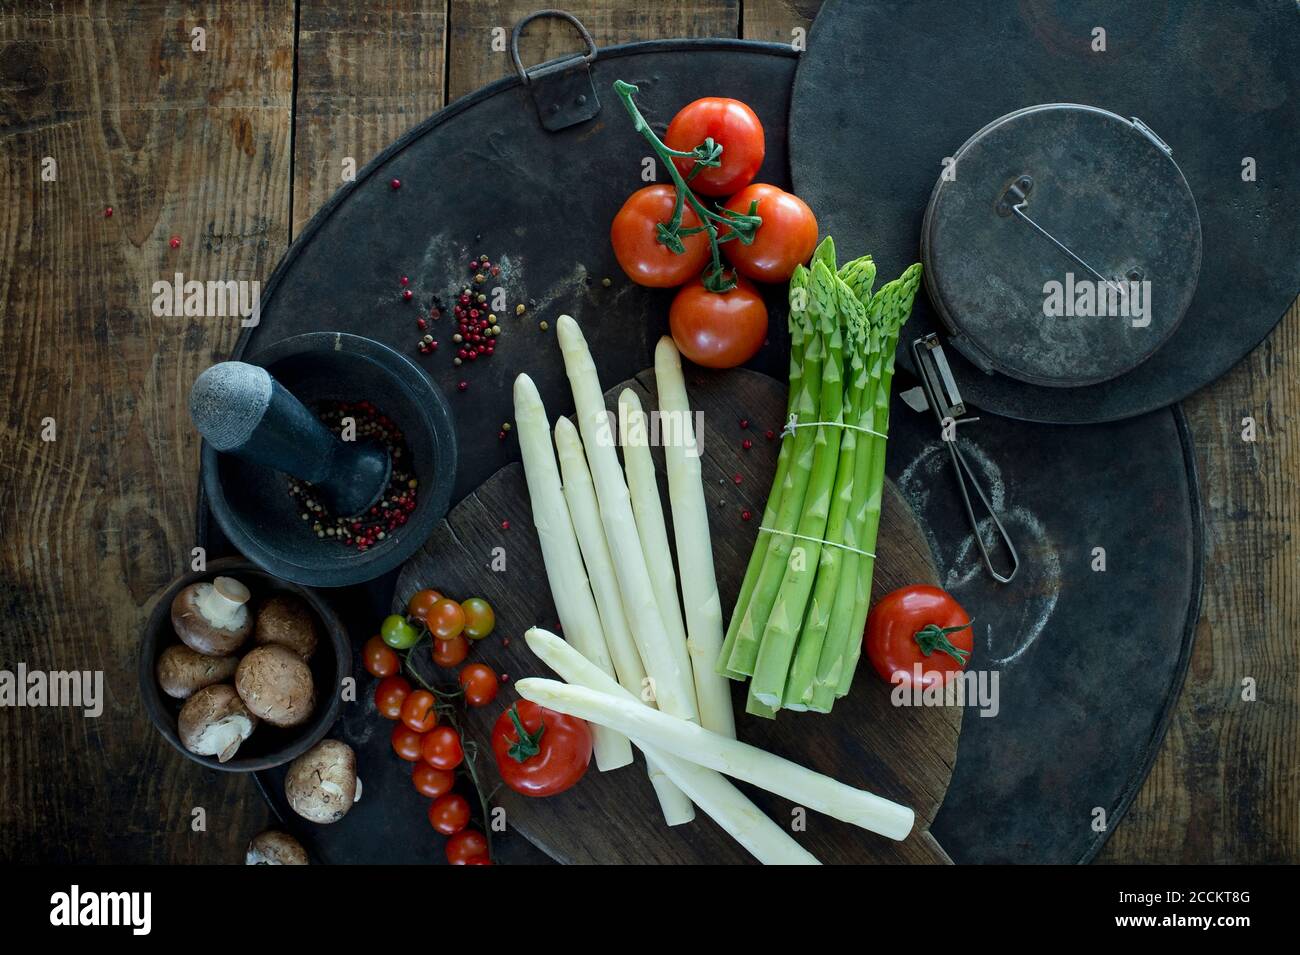 Mörtel und Stössel, Schäler, Spargelstiele, Pfefferkorn, Tomaten und Schüssel mit Pilzen auf rustikalem Backblech Stockfoto